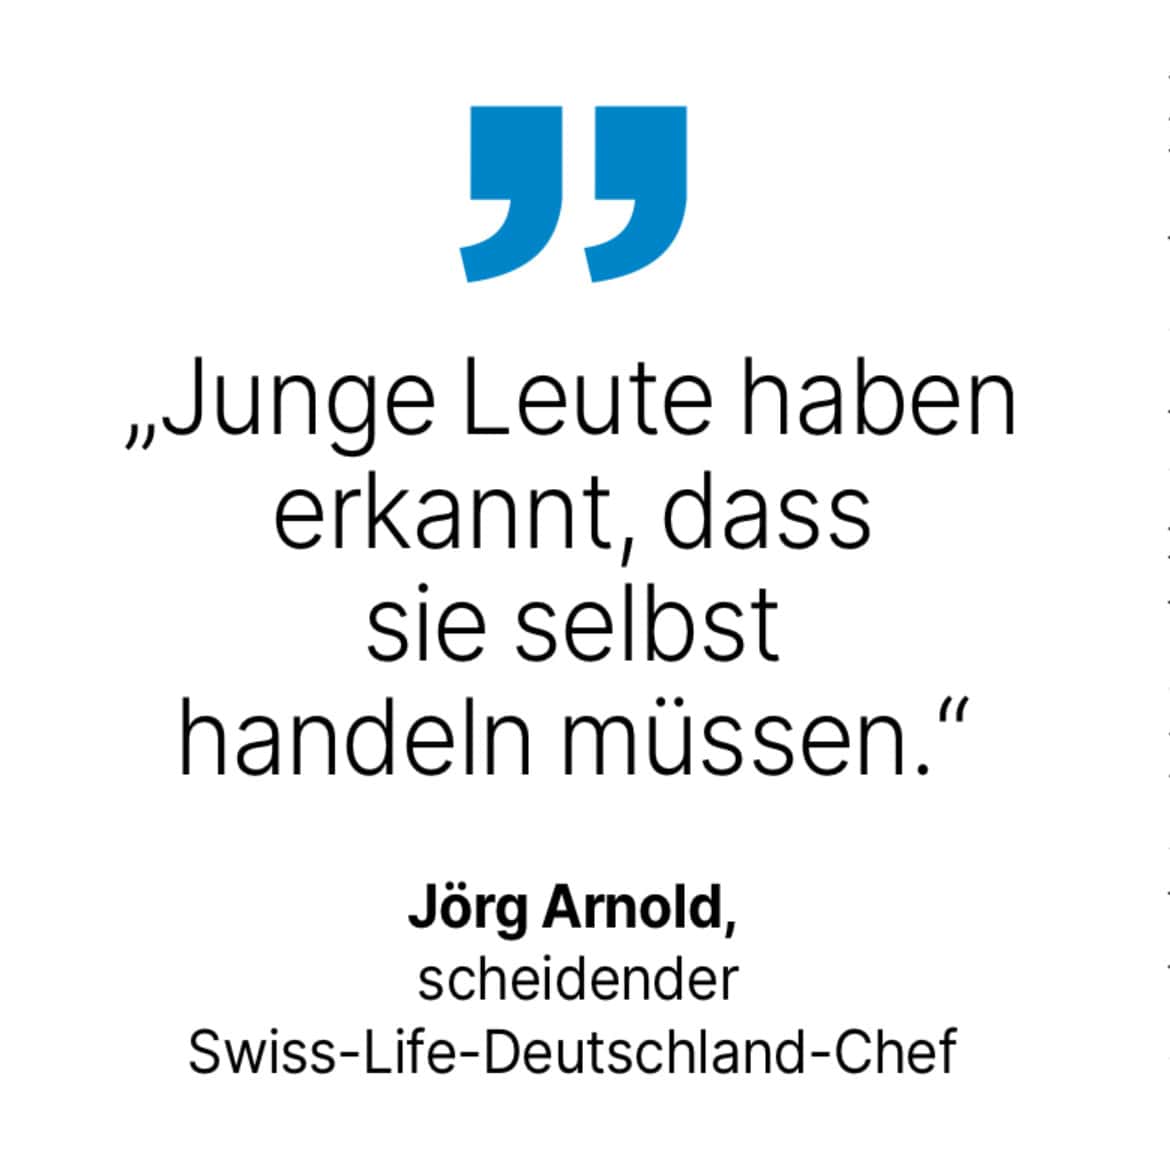 Jörg Arnold, scheidender Swiss-Life-Deutschland-Chef: Junge Leute haben erkannt, dass sie selbst handeln müssen.